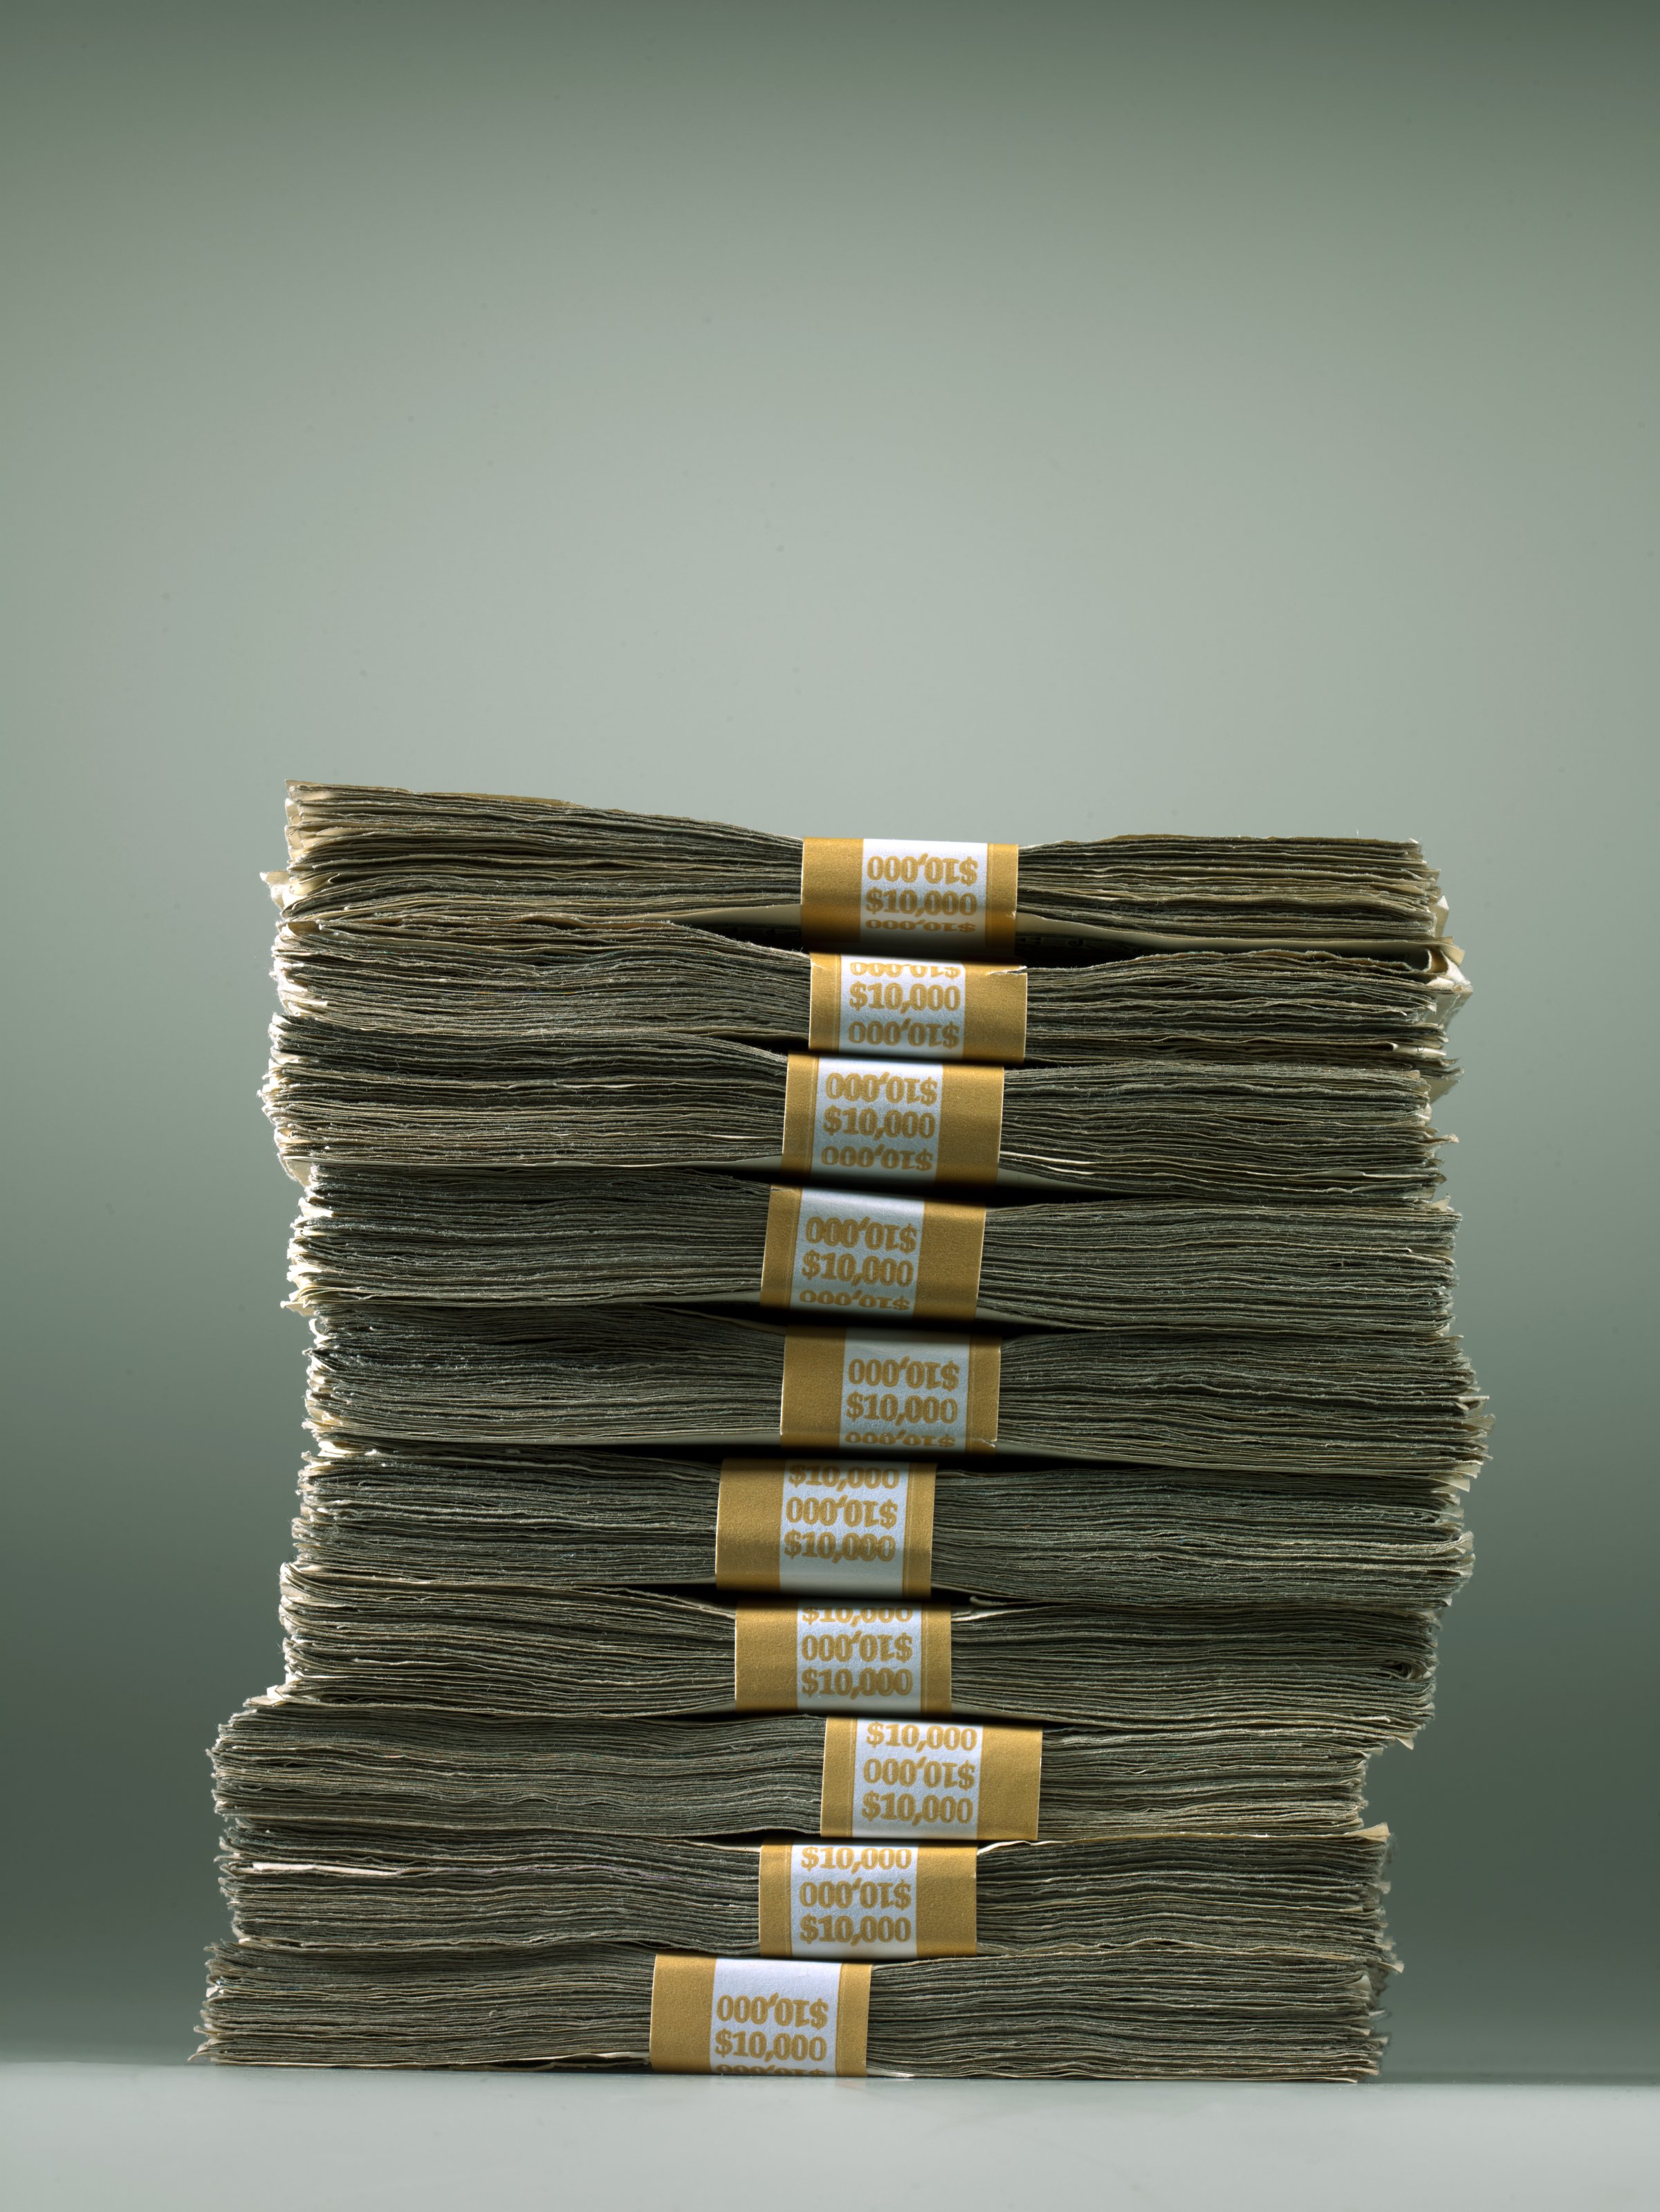 money-bill-stack